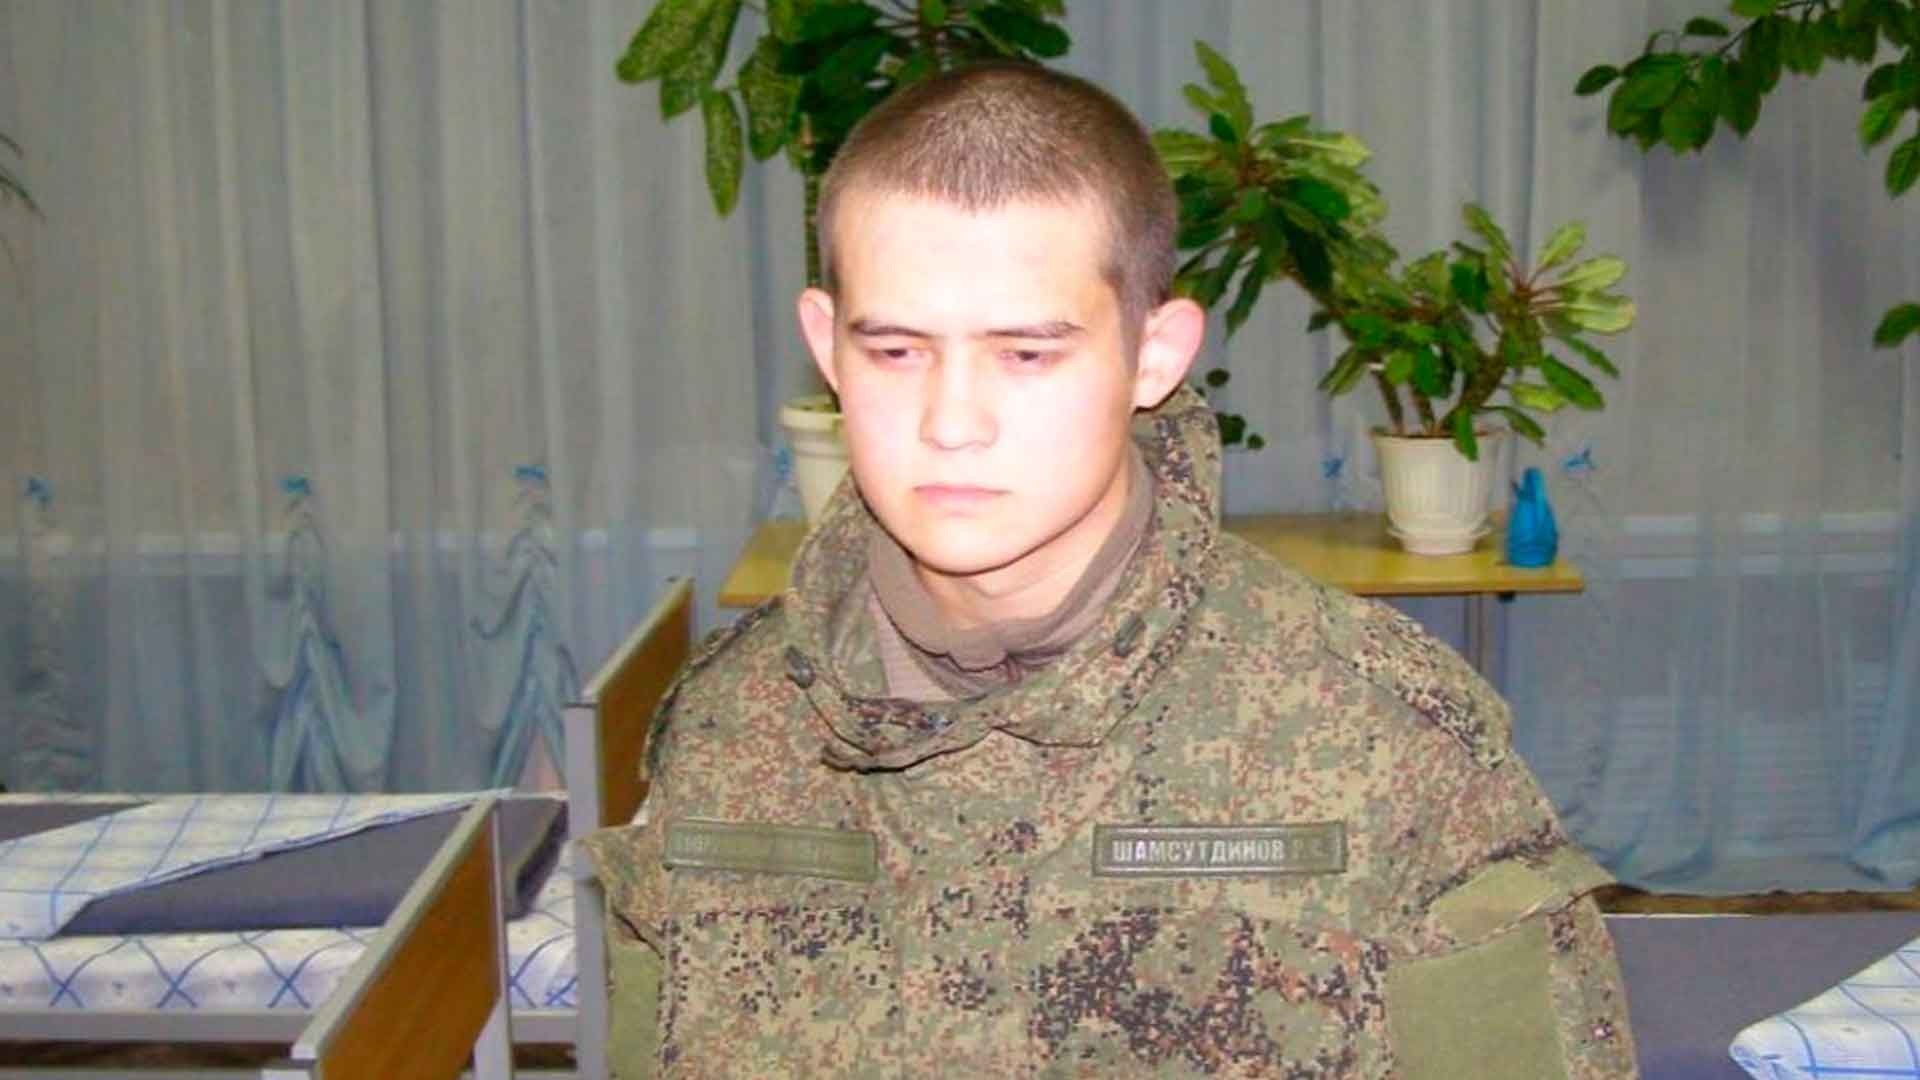 Солдату вменят покушение на убийство, рассказал его адвокат undefined